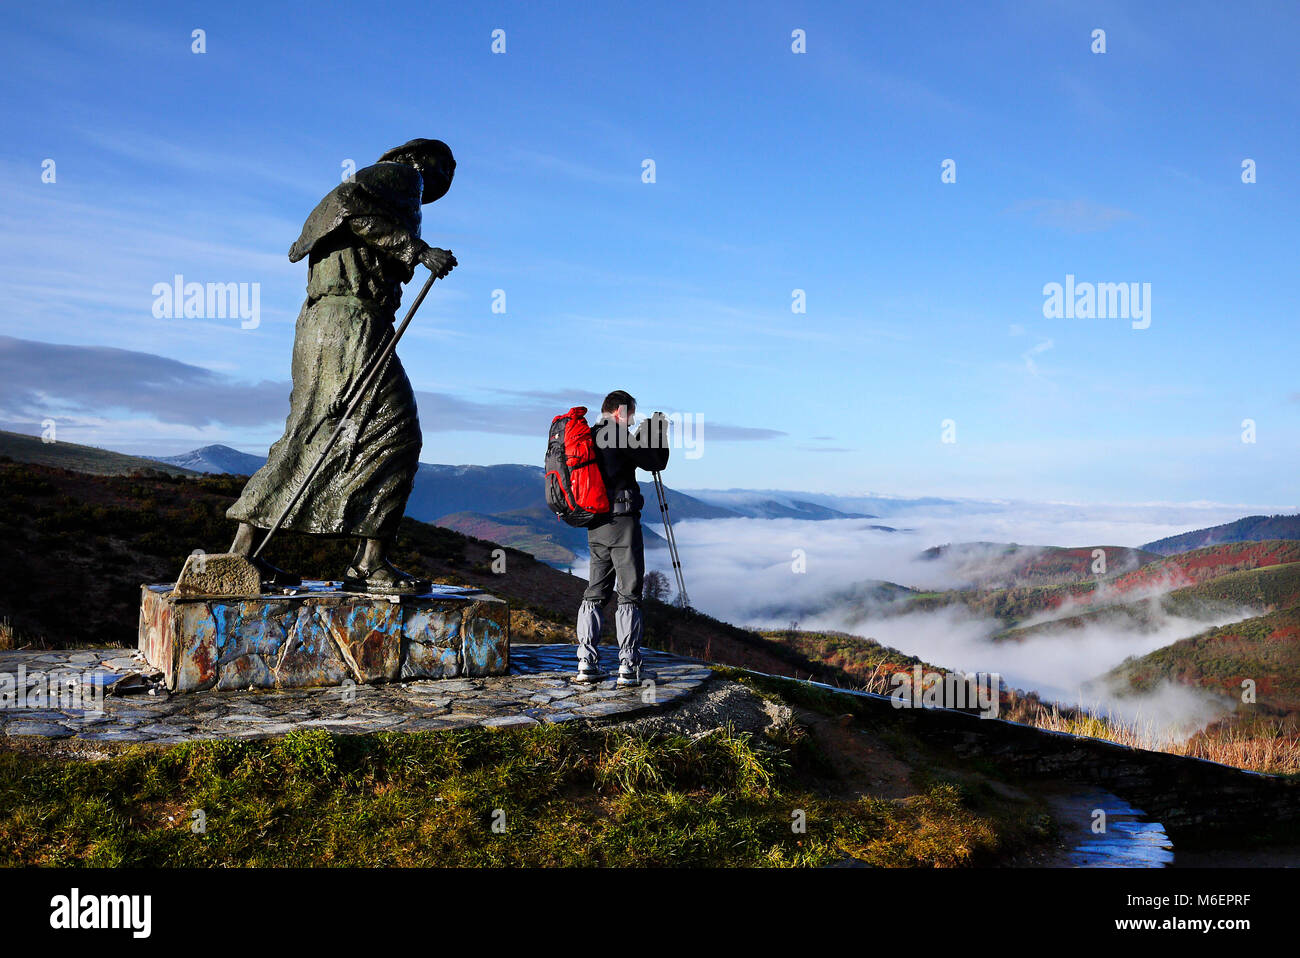 Am nächsten Morgen einen frühen Pilger auf dem Jakobsweg nach Santiago an der Statue von Peregrino auf dem Alto de San Roque in der Nähe von Pedrafita do Cebreiro, Lugo, Spanien. Stockfoto